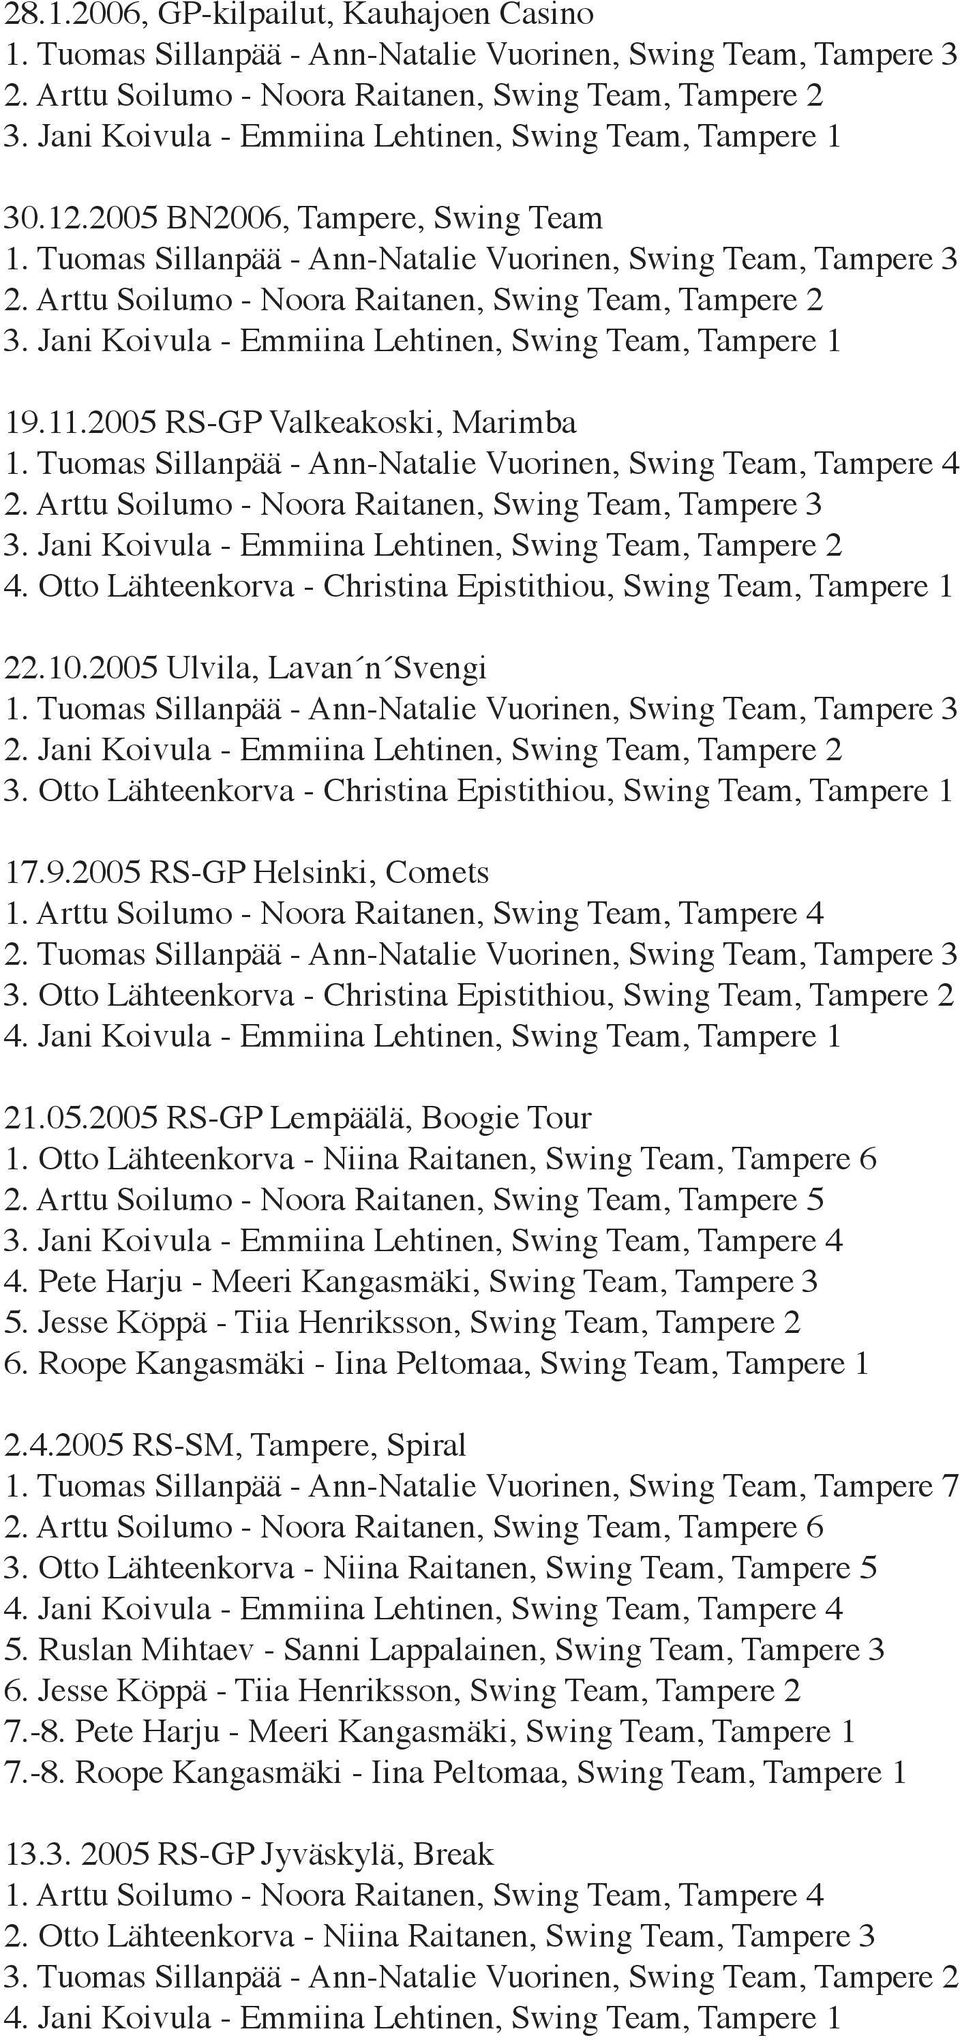 Tuomas Sillanpää - Ann-Natalie Vuorinen, Swing Team, Tampere 4 2. Arttu Soilumo - Noora Raitanen, Swing Team, Tampere 3 3. Jani Koivula - Emmiina Lehtinen, Swing Team, Tampere 2 4.